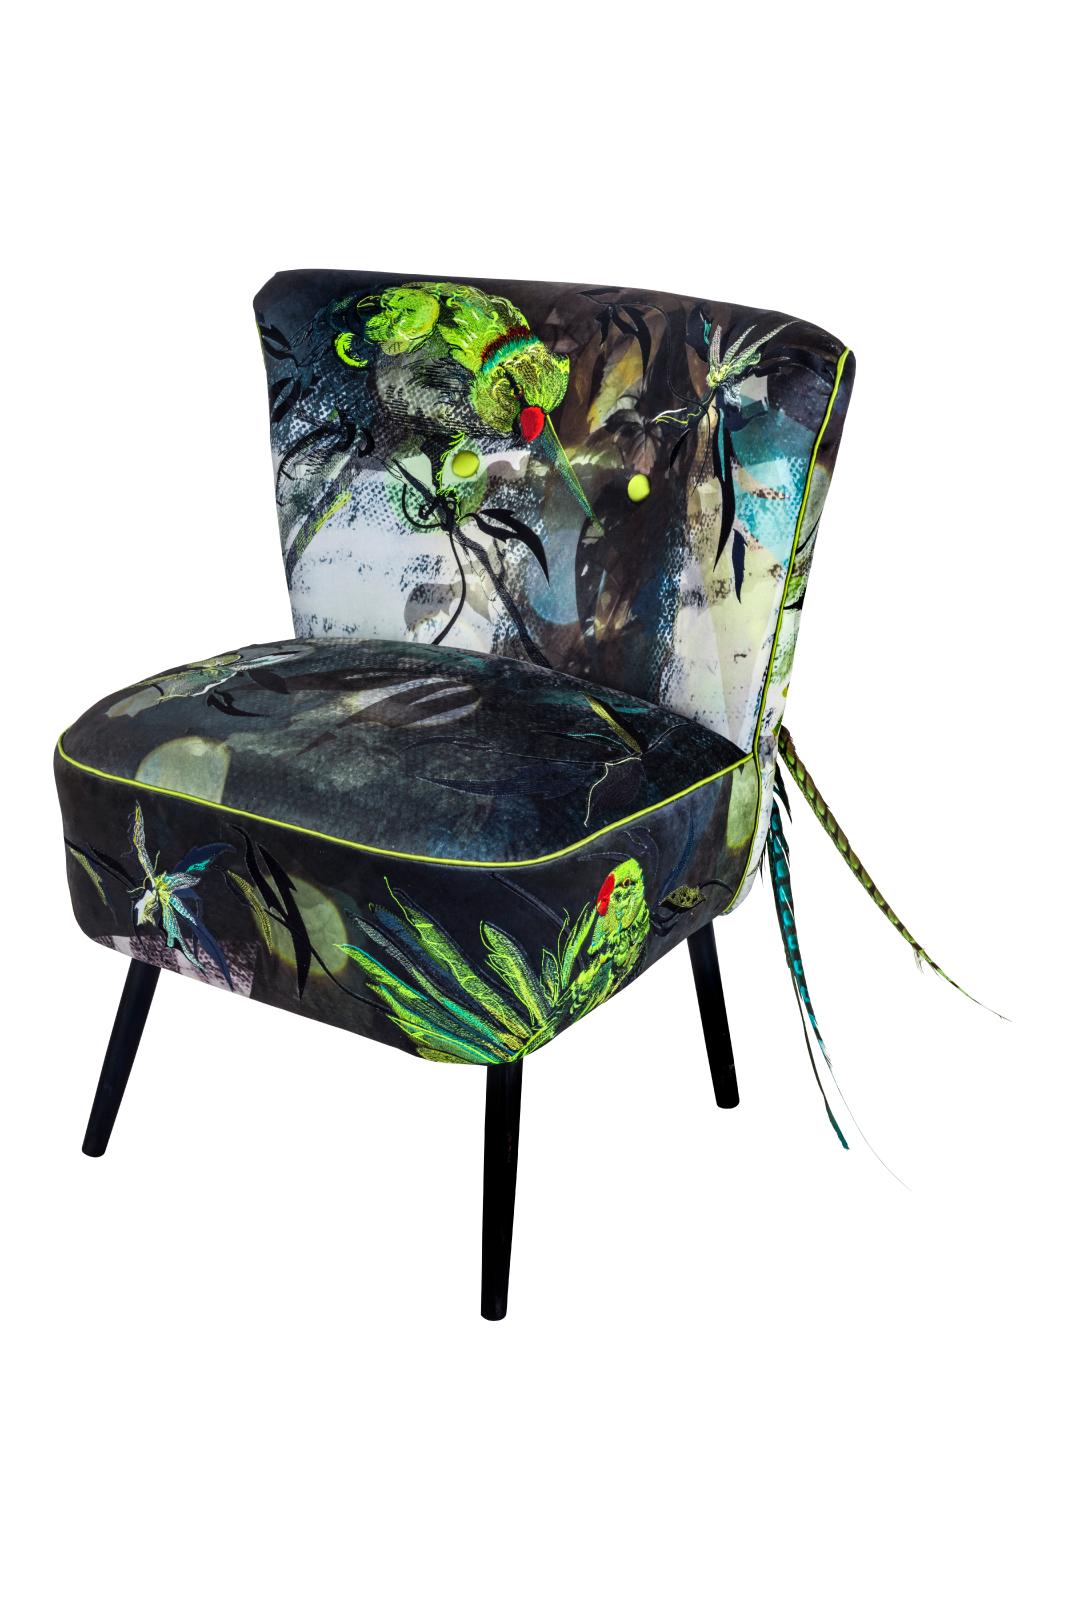 Der blaue Papageien-Cocktailstuhl ist ein prächtiger Statement-Stuhl aus bedrucktem Samt und aufwändiger Stickerei auf einem maßgeschneiderten Gestell, das nach originalen Vintage-Modellen entwickelt wurde. Migrierende Tiere, von entlaufenen